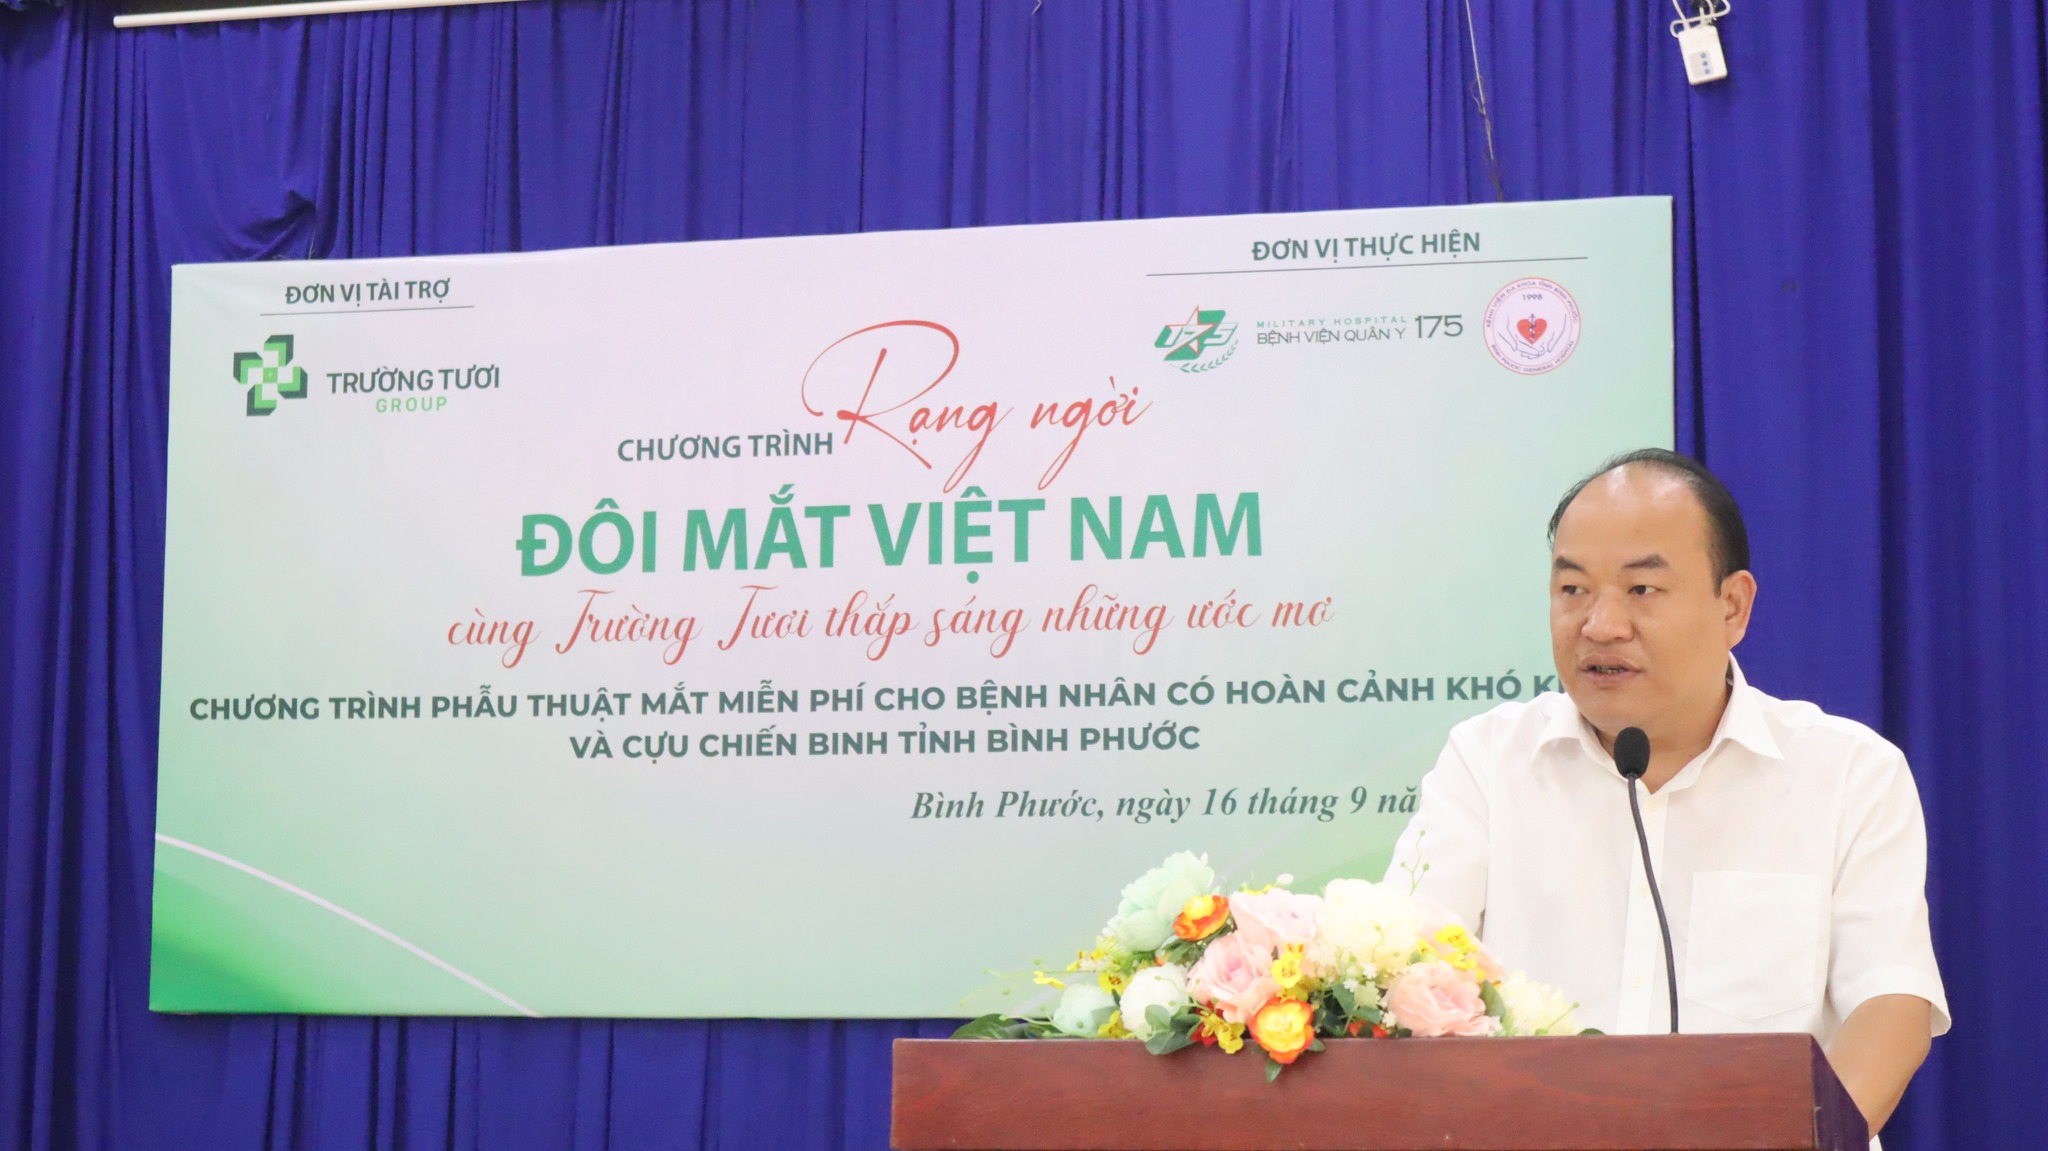 Chương trình phẫu thuật mắt miễn phí “Rạng ngời đôi mắt Việt Nam – cùng Trường Tươi thắp sáng những ước mơ”